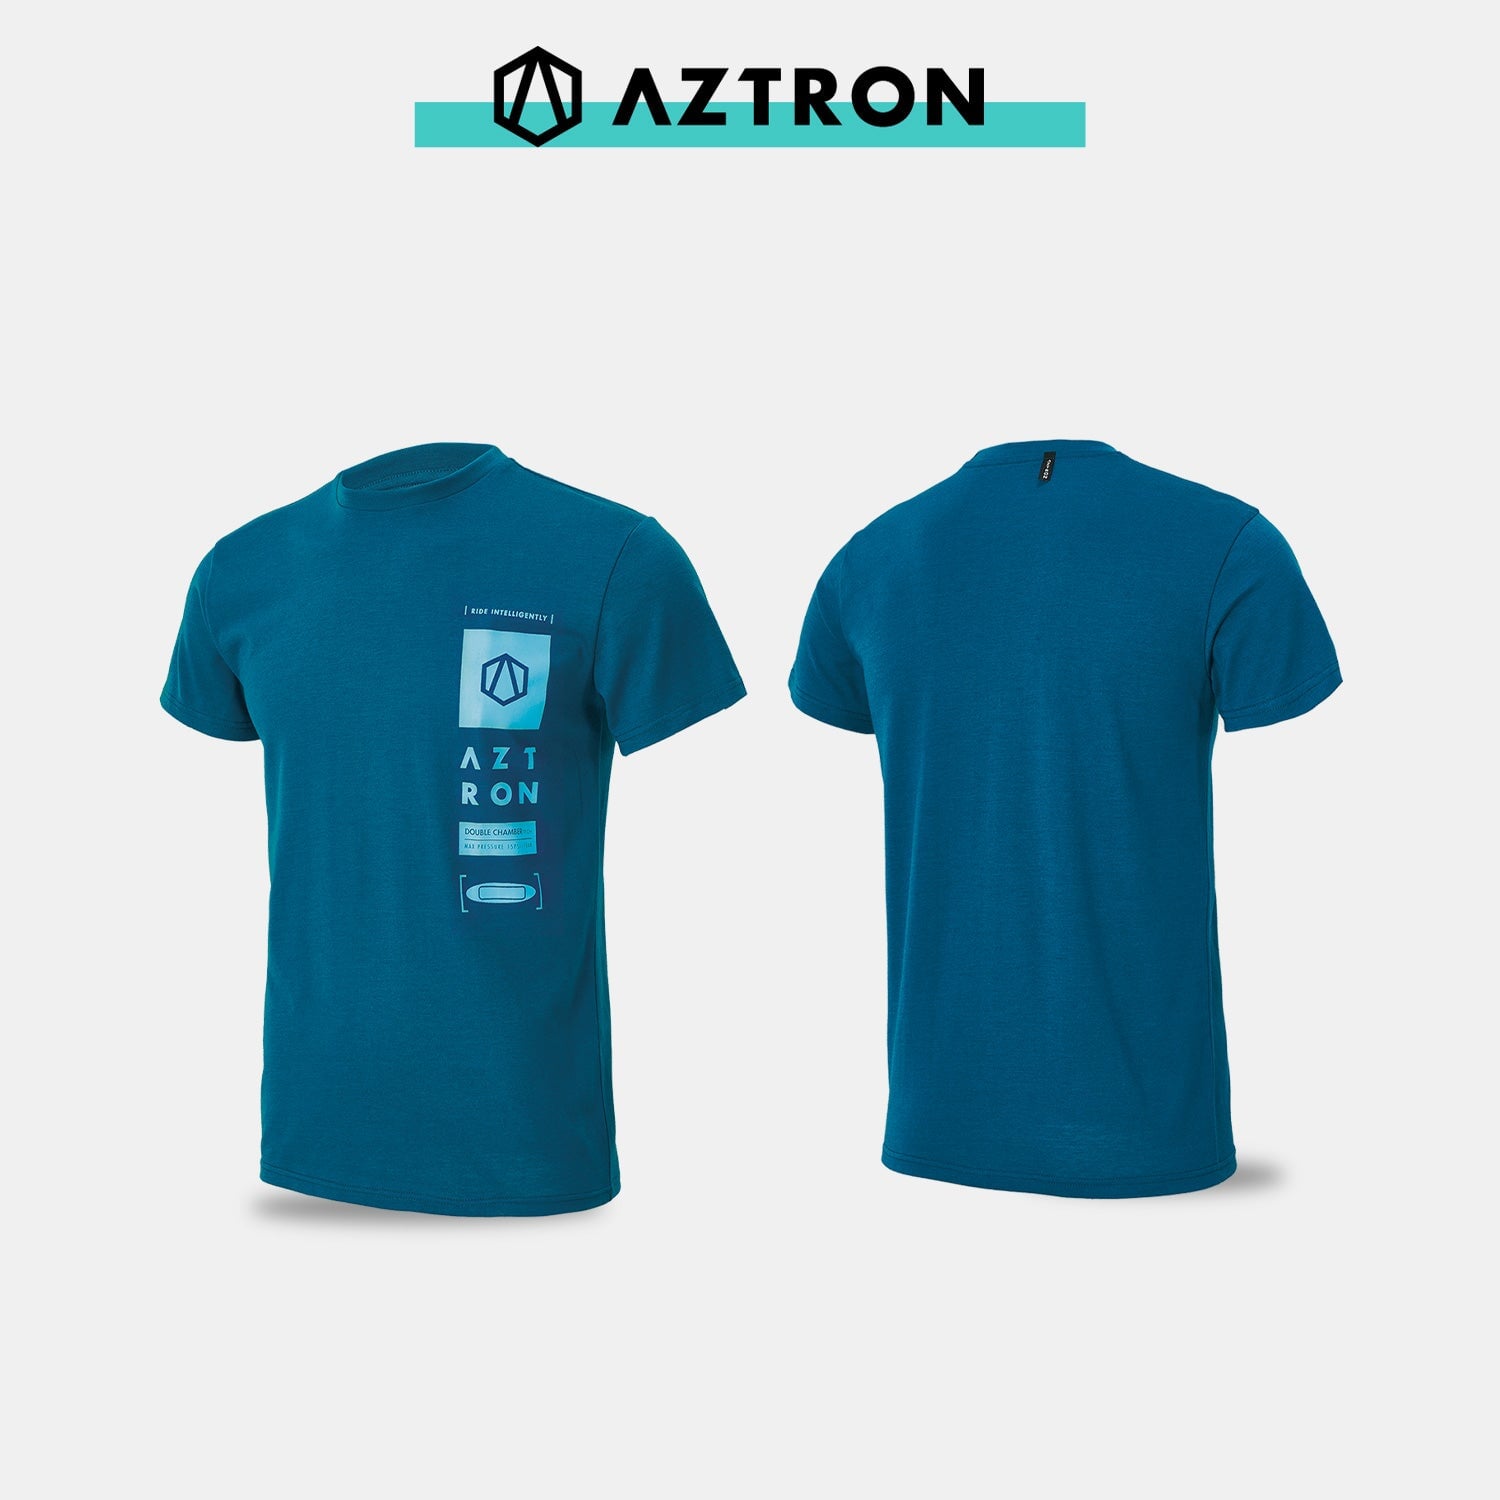 AZTRON Shirt DOUBLE CHAMBER TECH TEE-BLUE